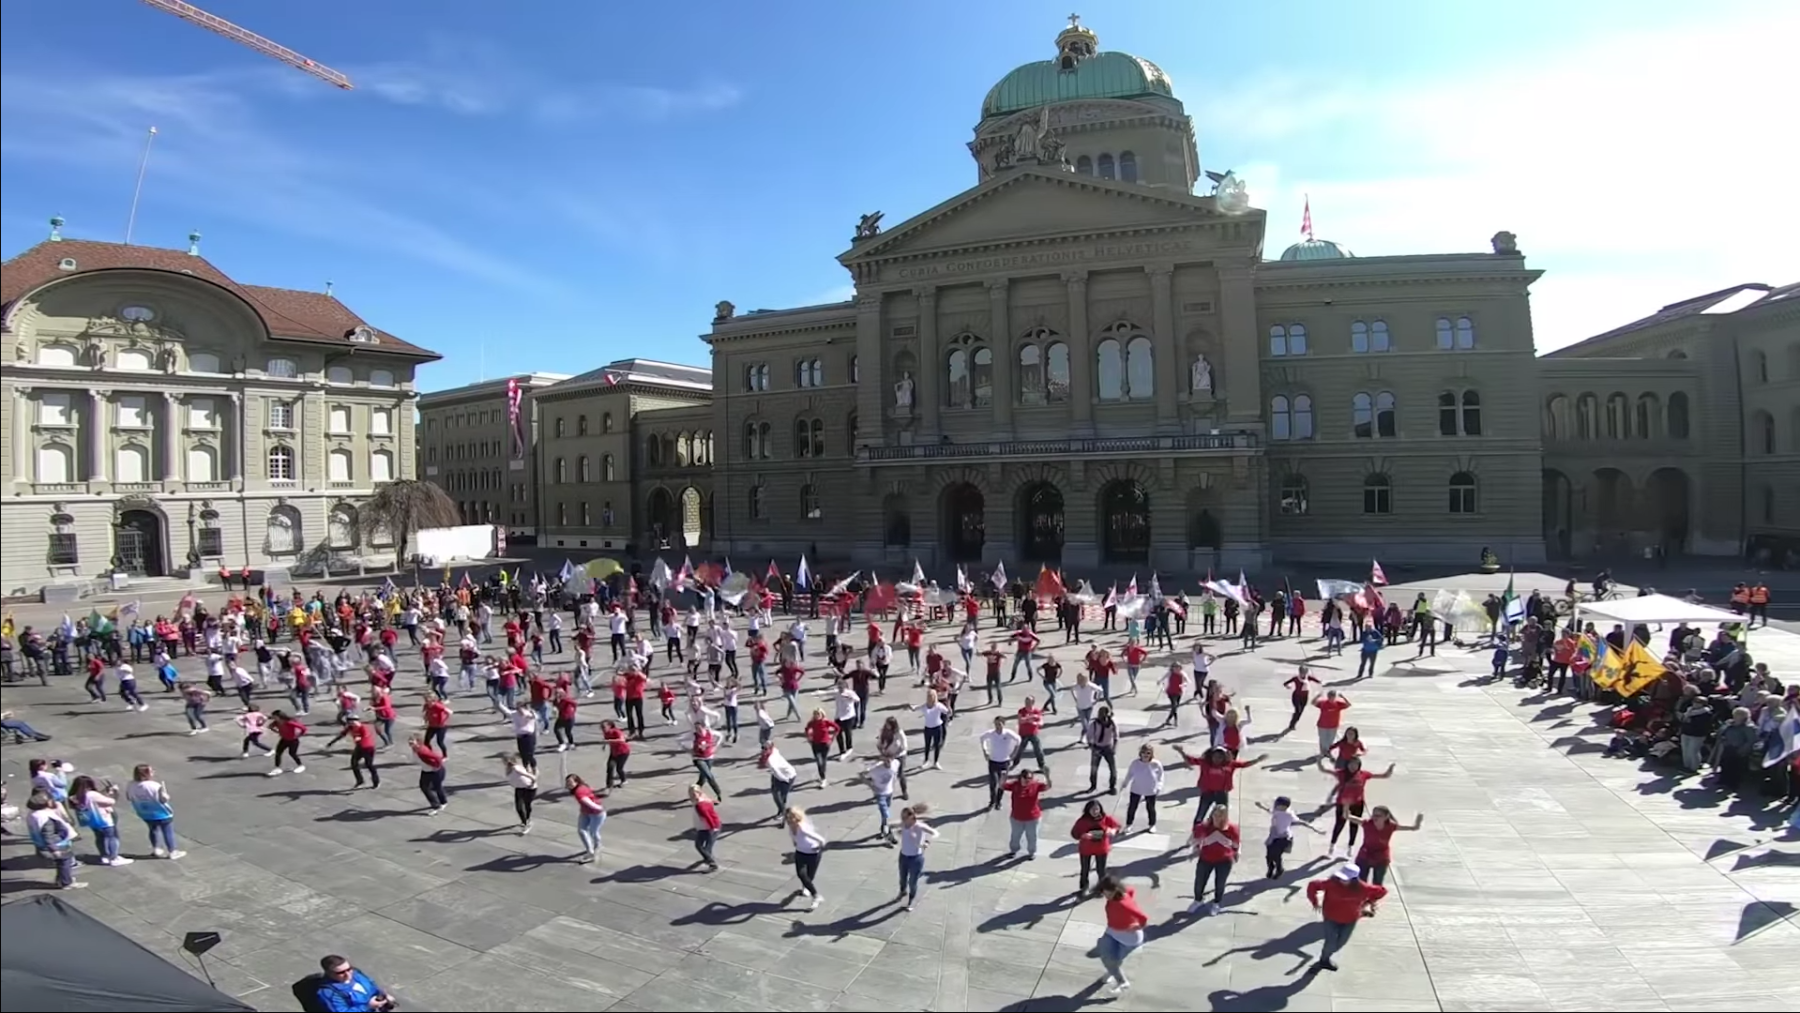 Des dizaines de personnes dancent en même teps sur la Place fédérale de Berne